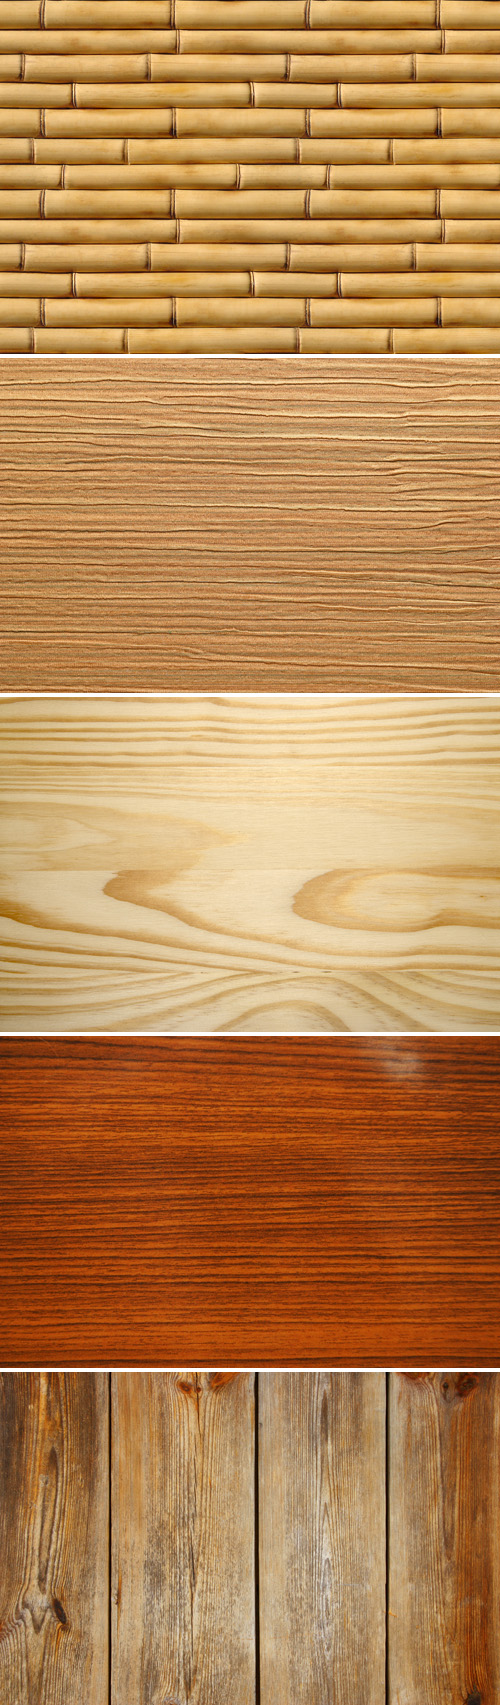 Stock Photos - Wood Textures